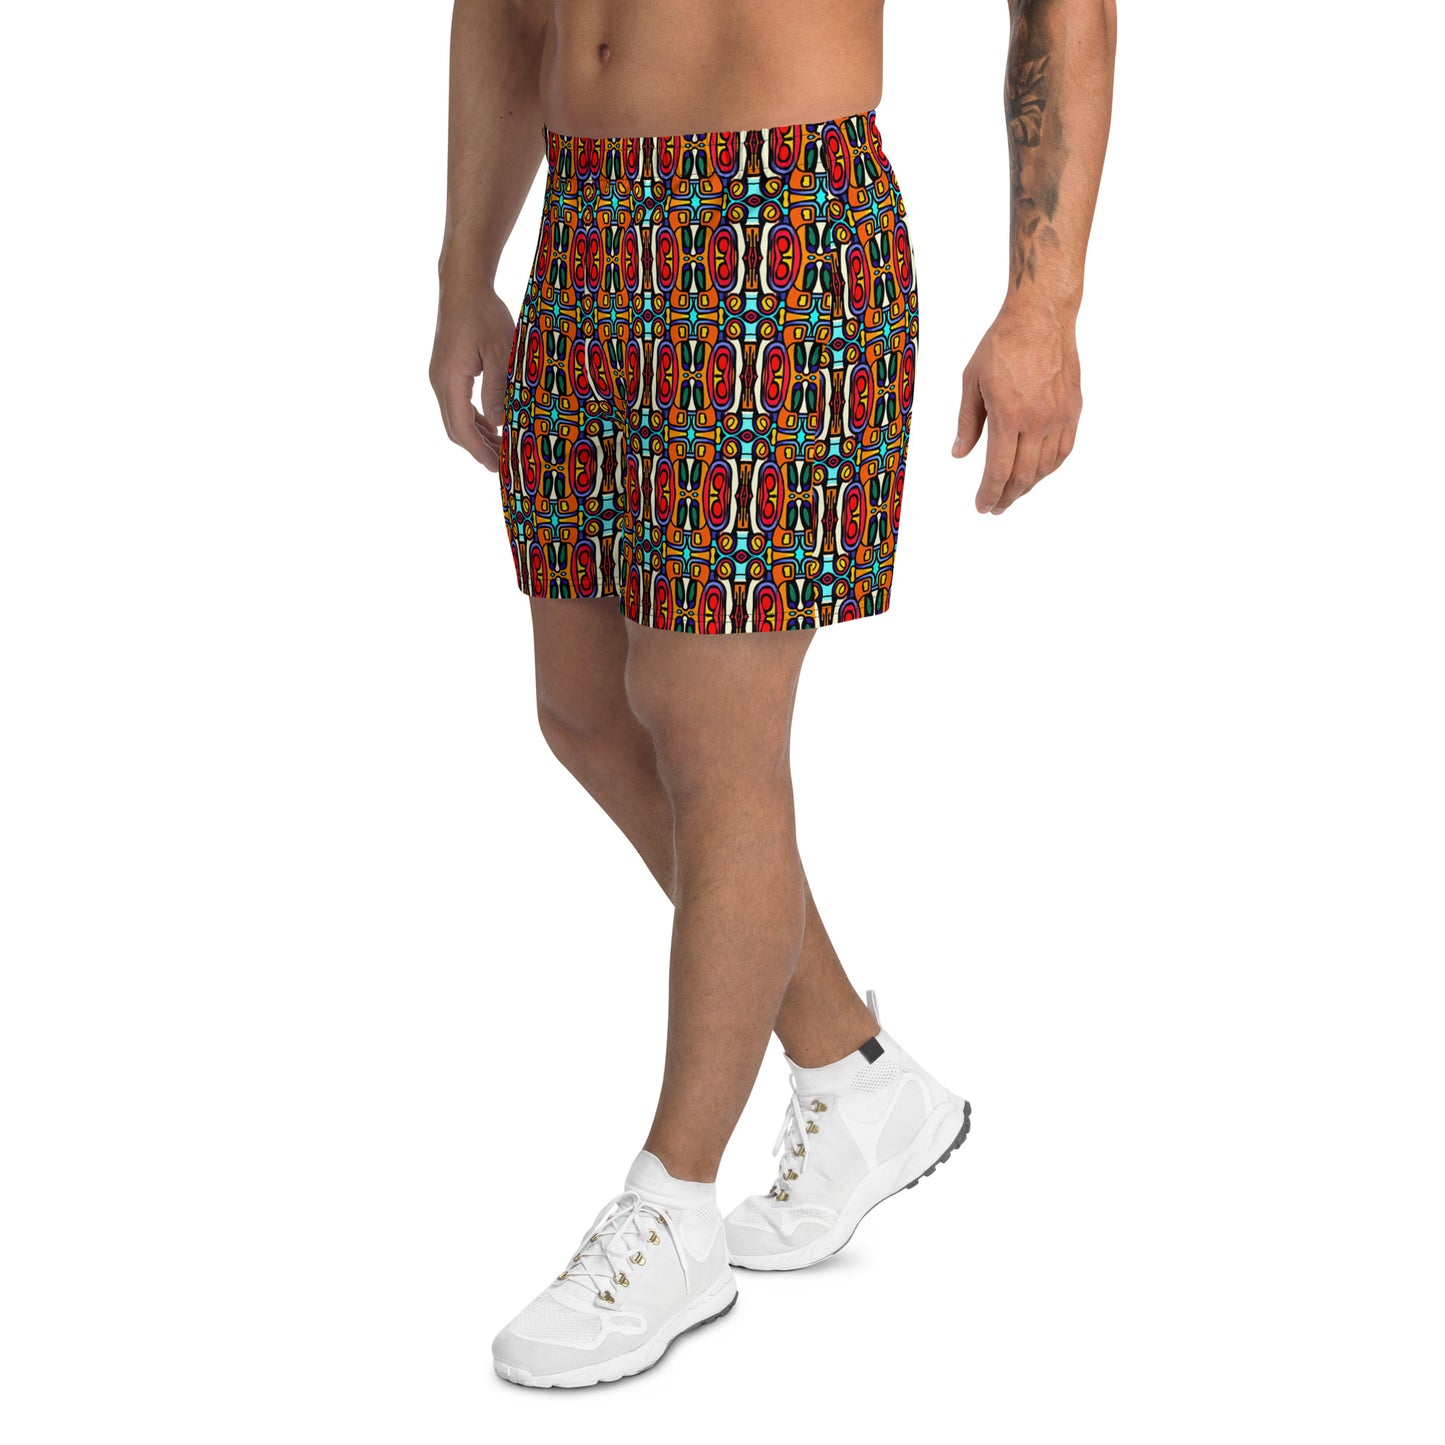 DMV 0002 Psy Artsy Men's Recycled Athletic Shorts